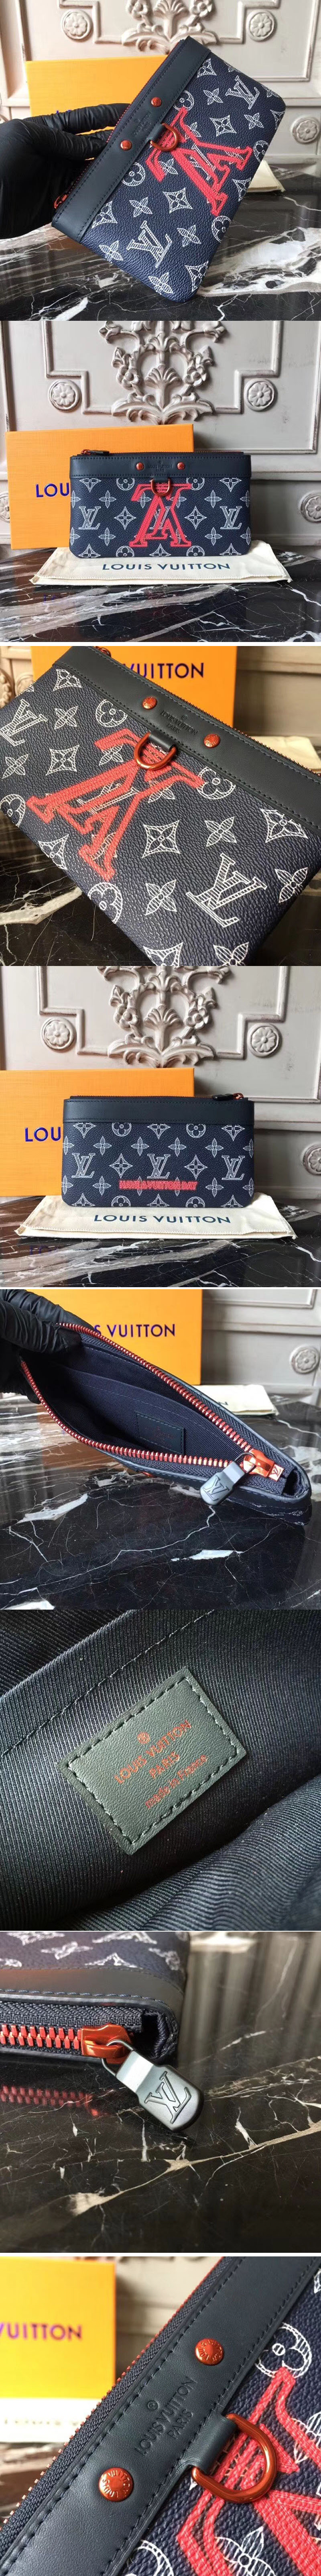 Replica Louis Vuitton Pochette Apollo PM Monogram Upside Down Canvas